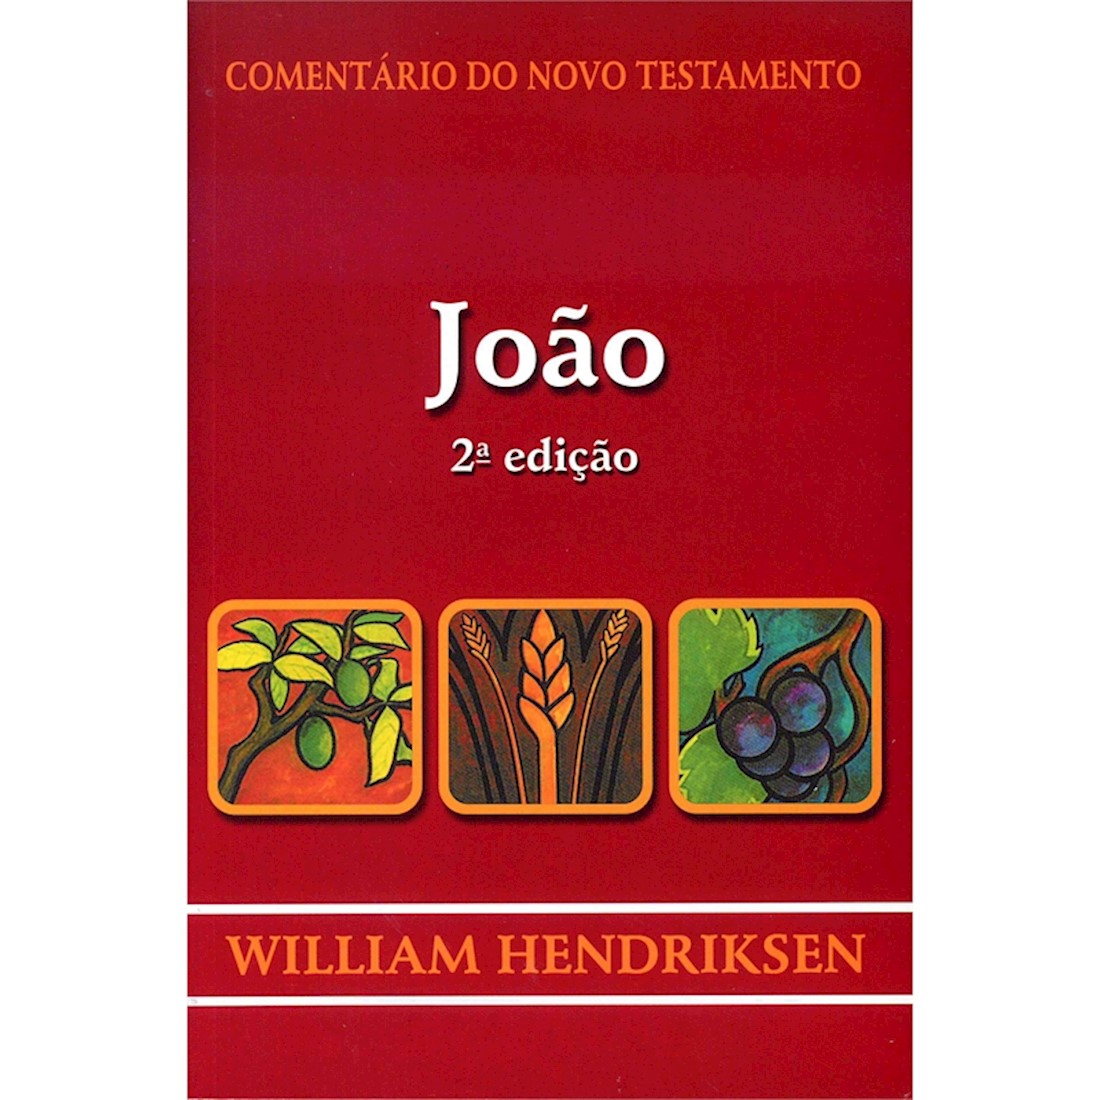 Livro Comentário do Novo Testamento de João - 2ª edição